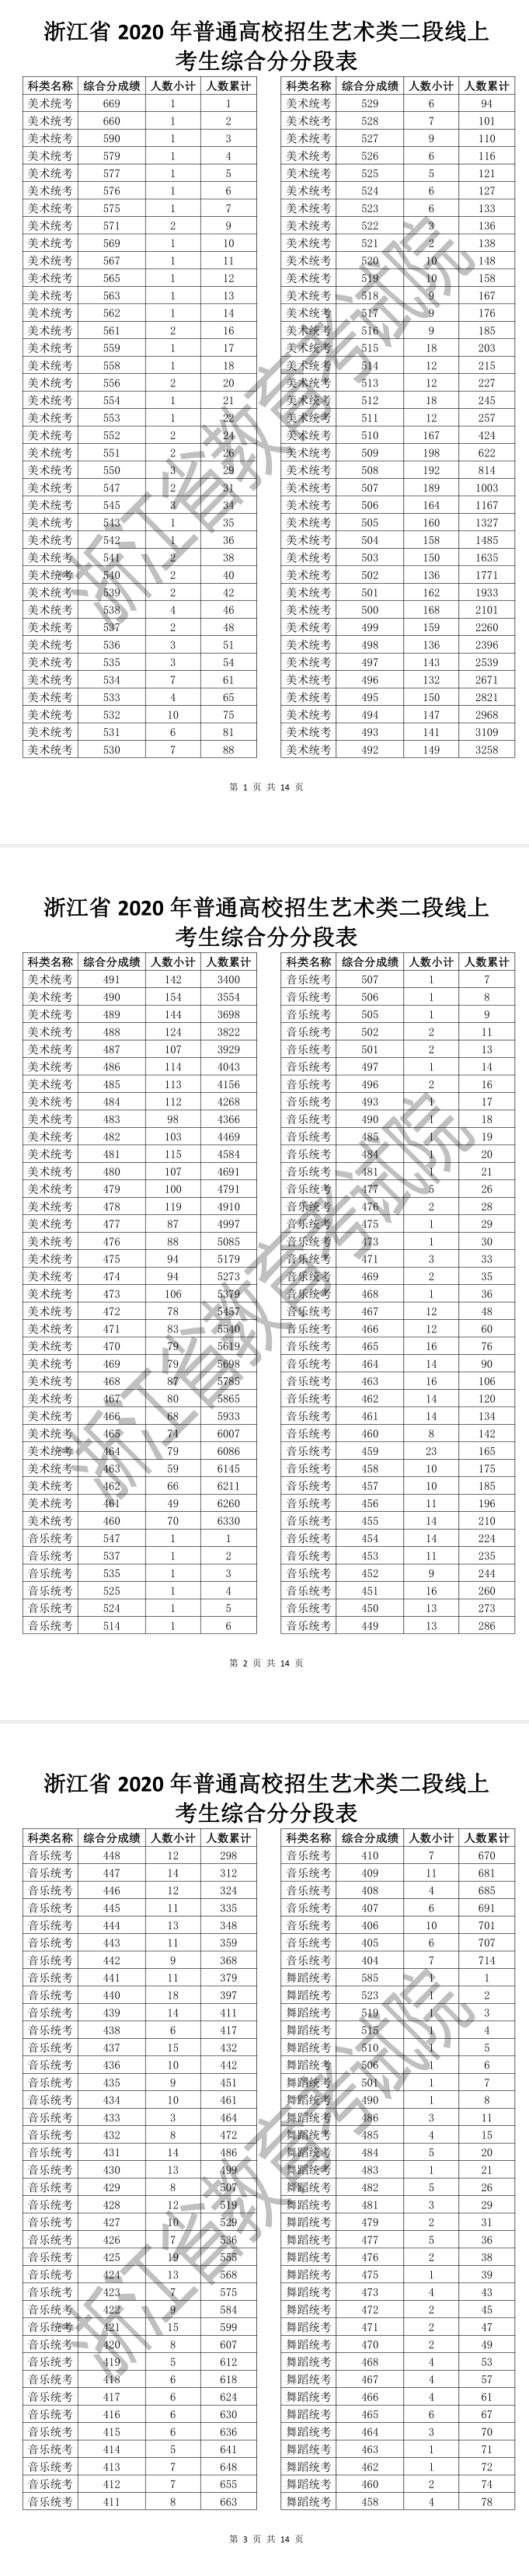    浙江省2020年普通高校招生艺术类二段线上考生综合分分段表